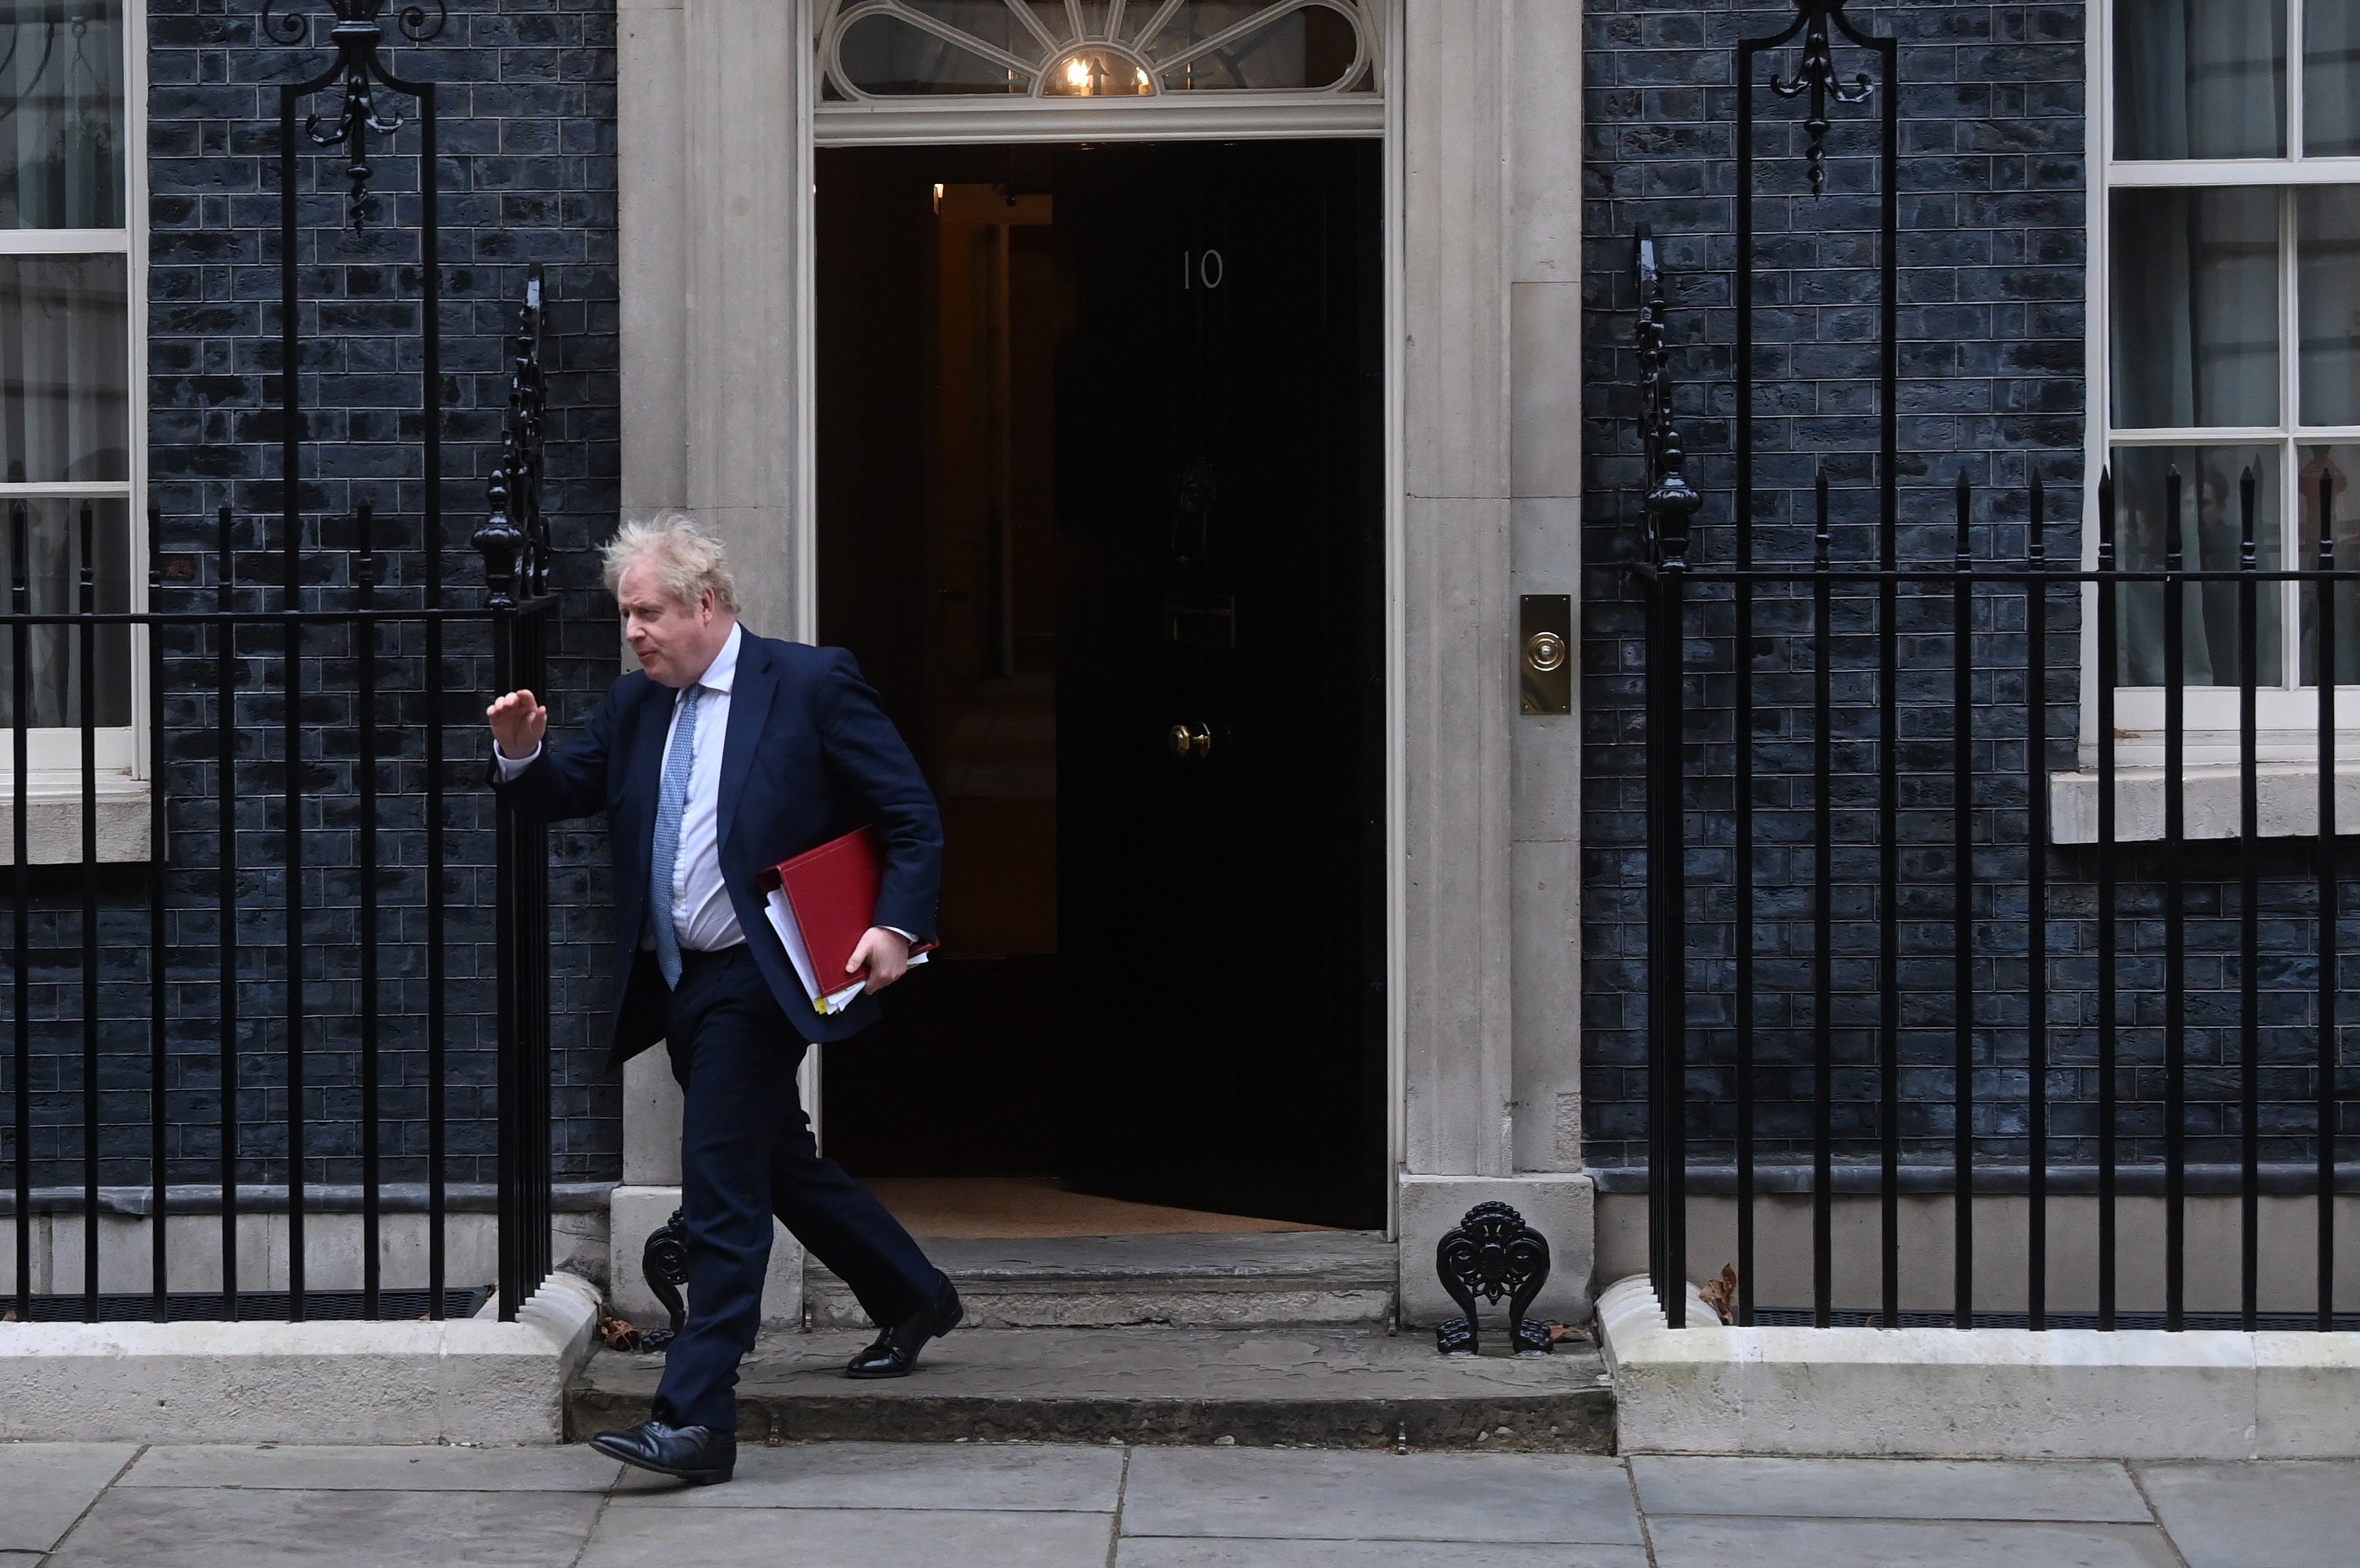 Johnson podria ser investigat ara per suborns en una reforma a Downing Street